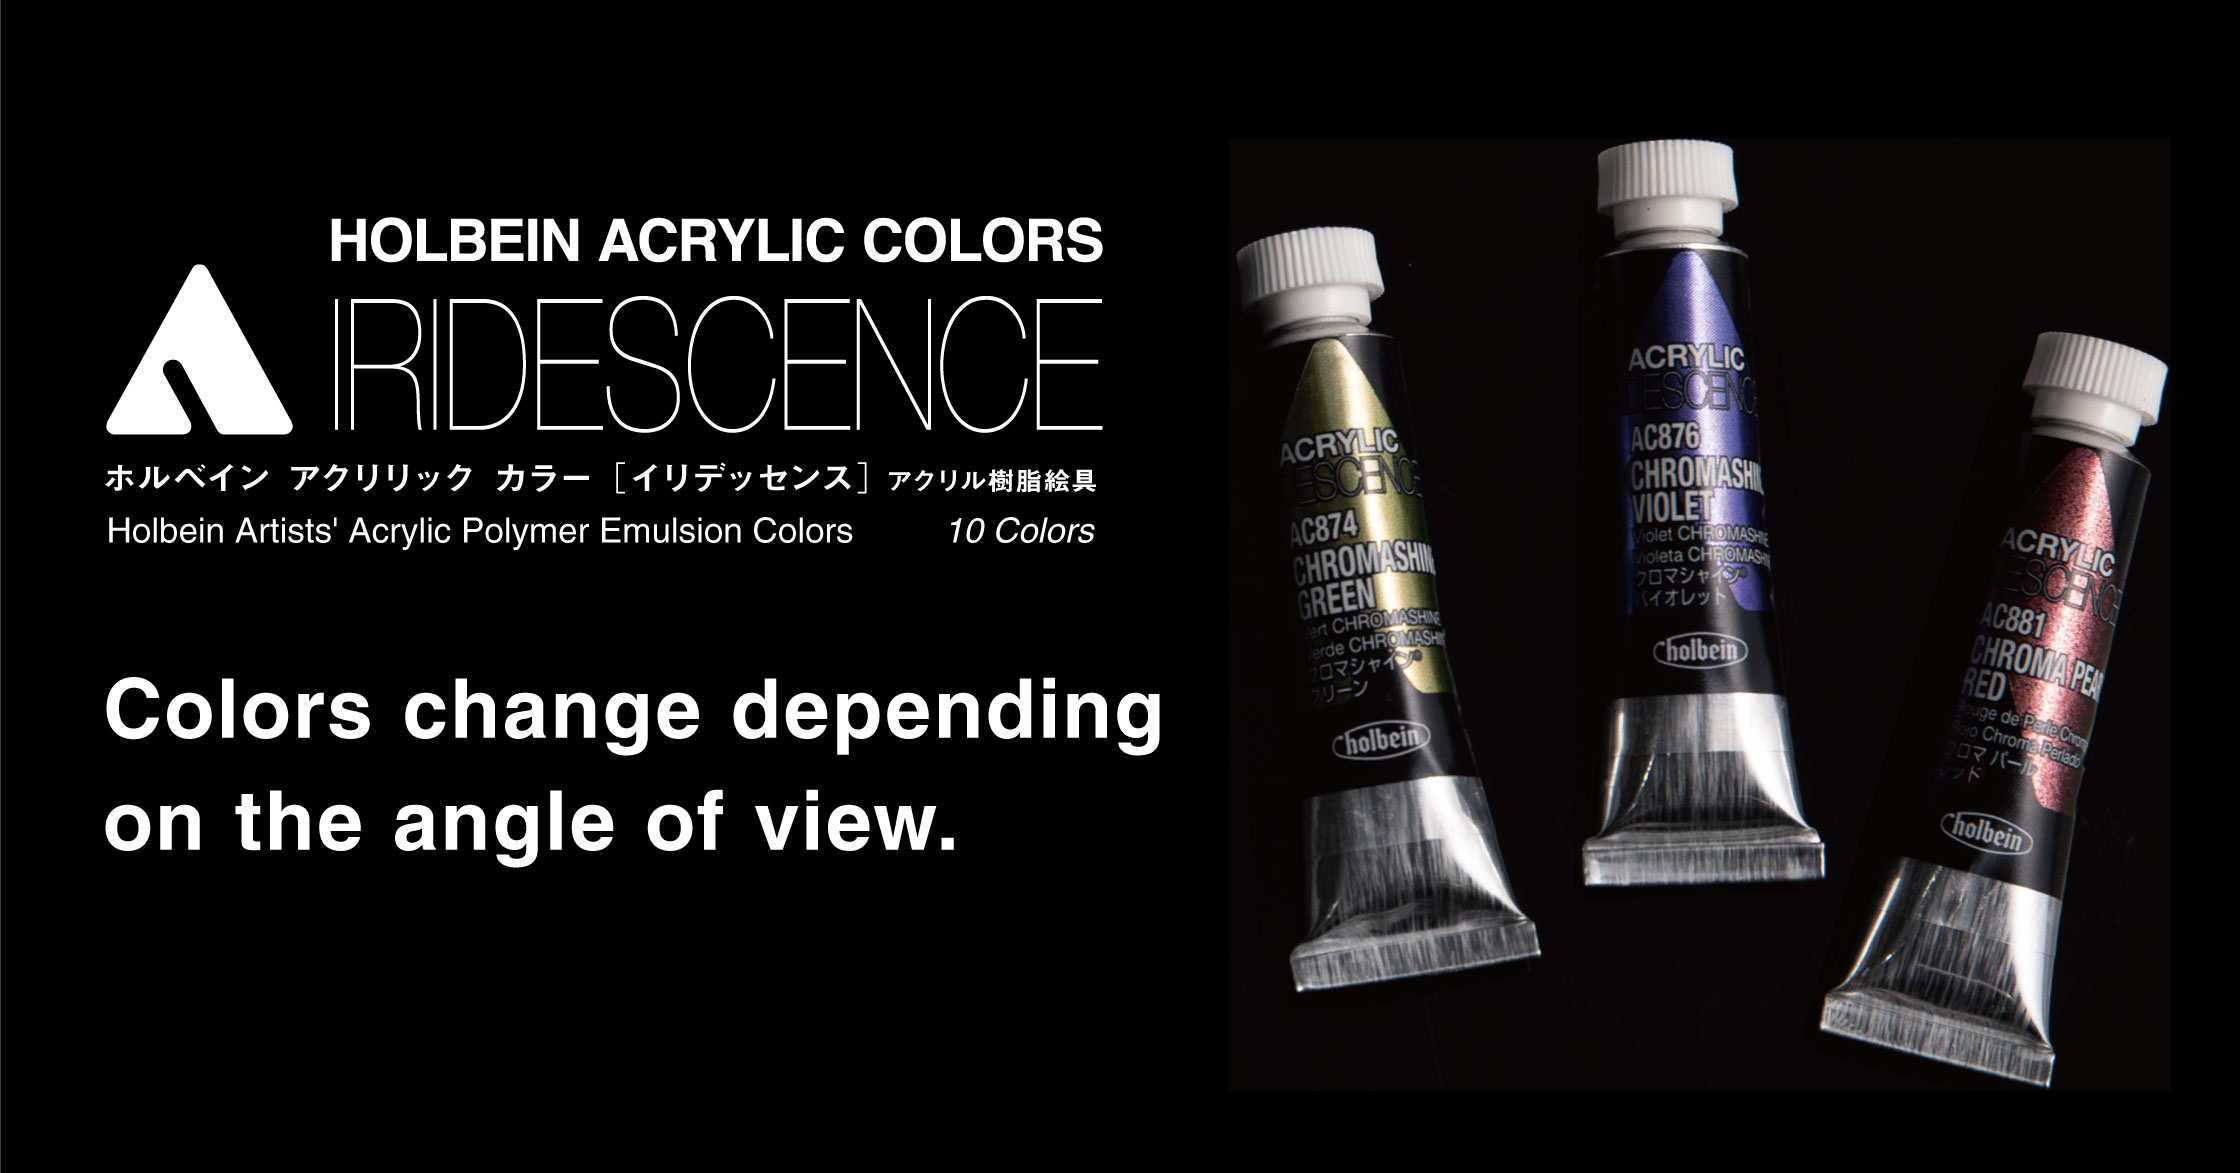 Acrylic Iridescence